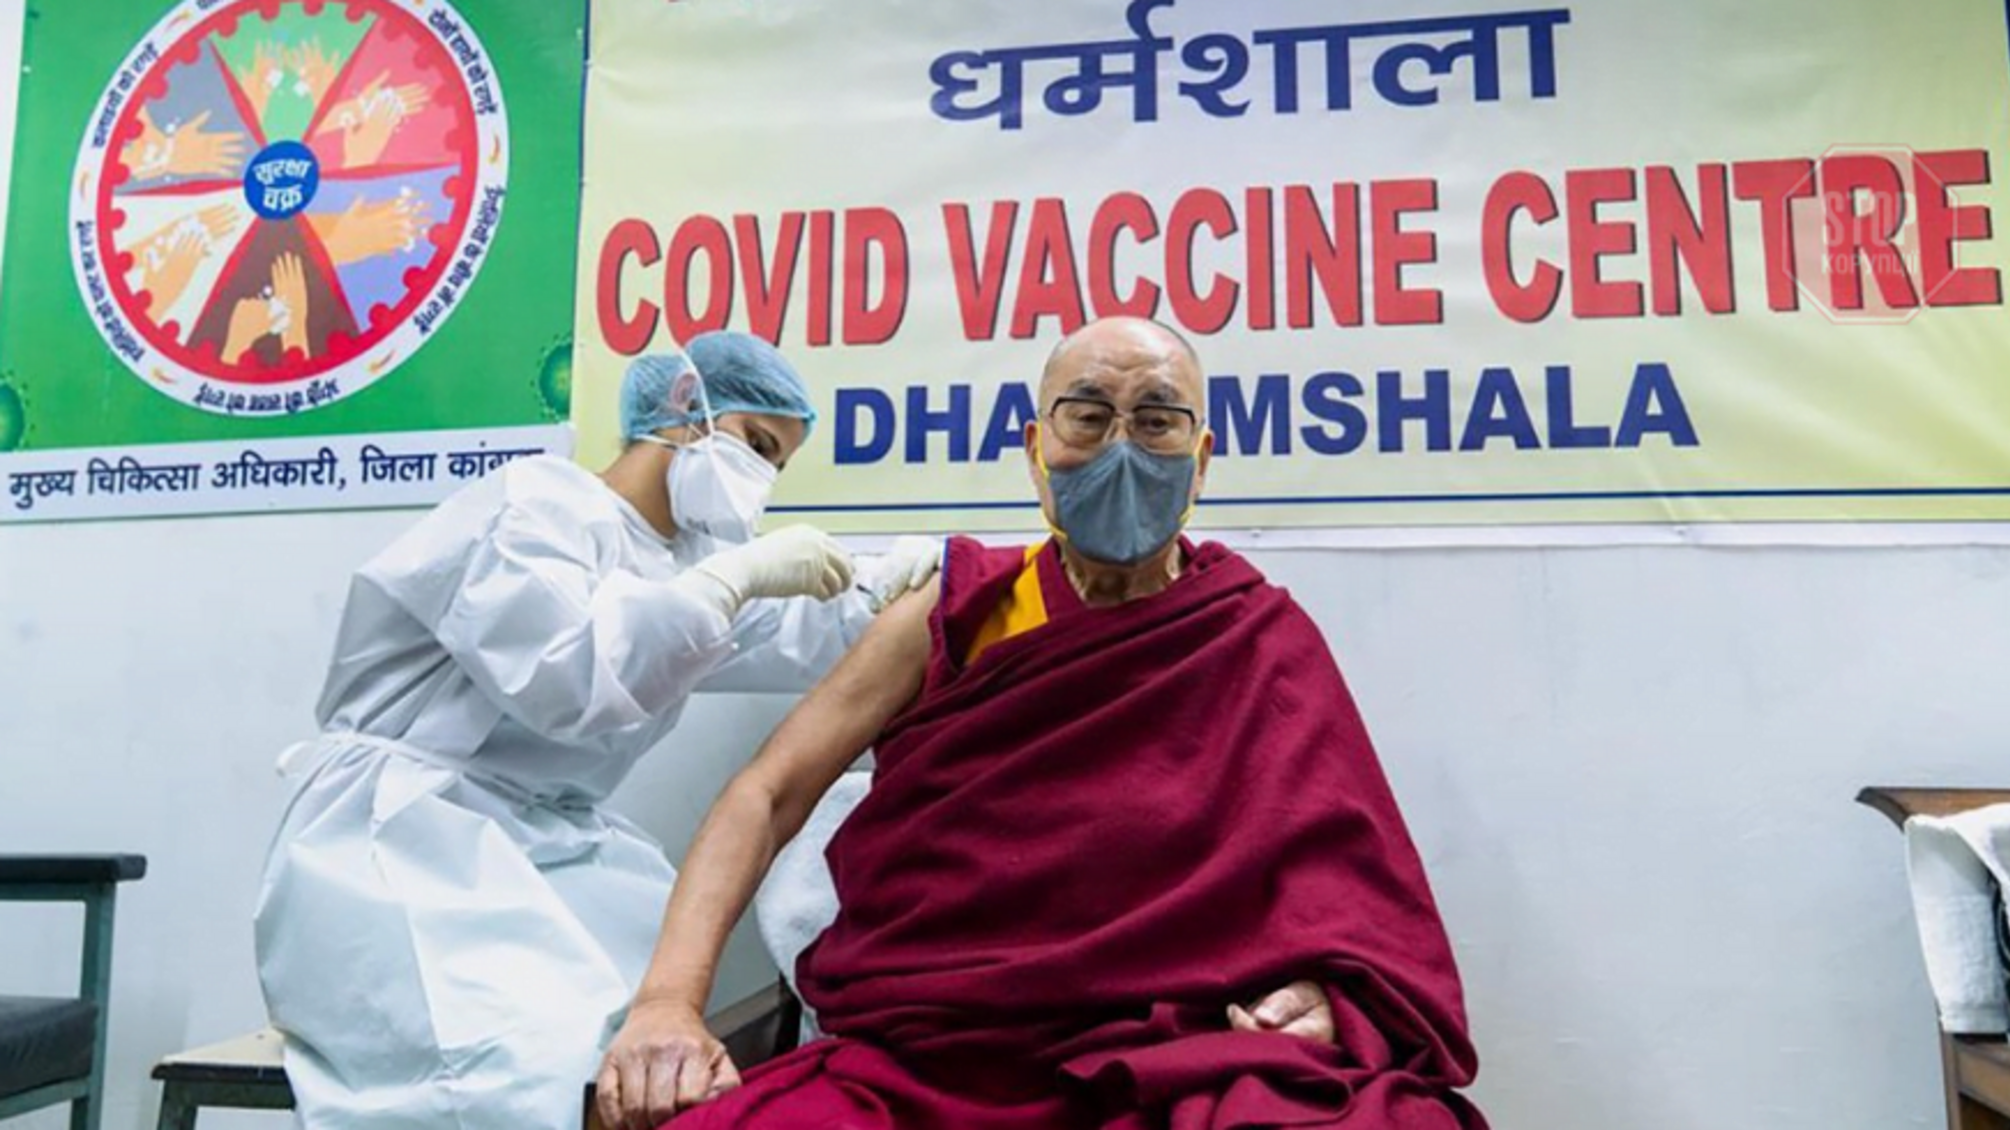 Далай-ламу вакцинировали препаратом, который закупила Украина (видео)